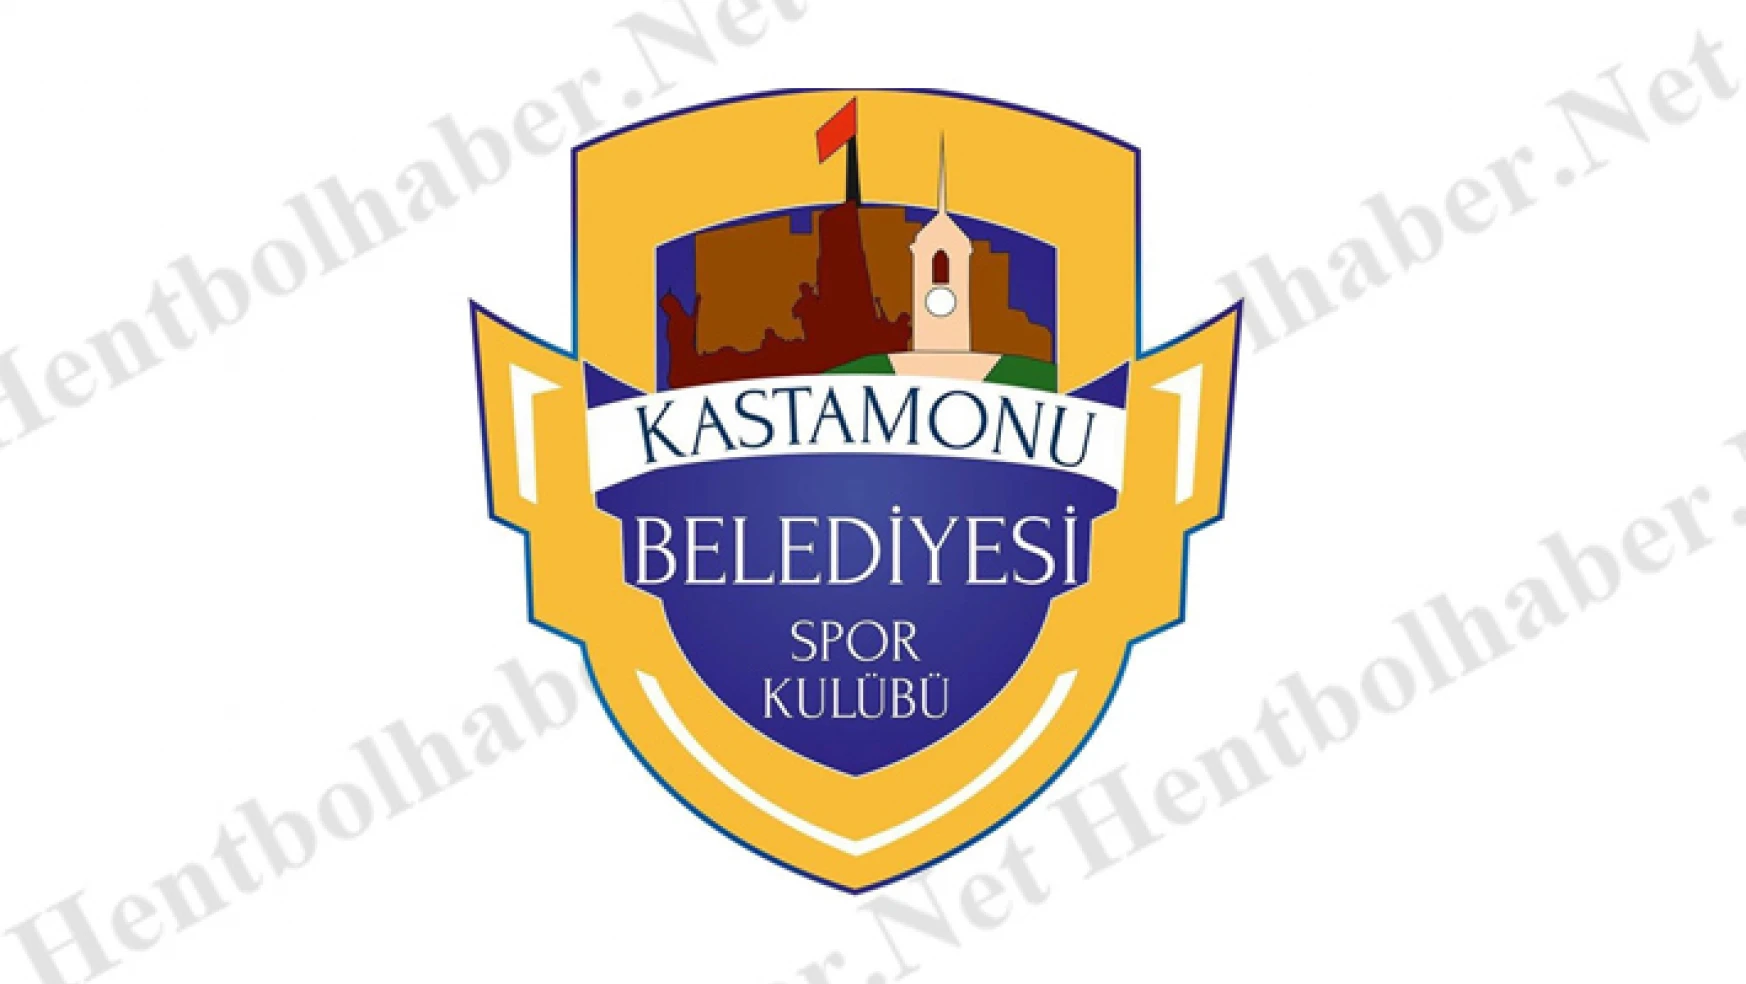 Kastamonu Belediyesi GSK’nın Avrupa serüveni Sports TV’de